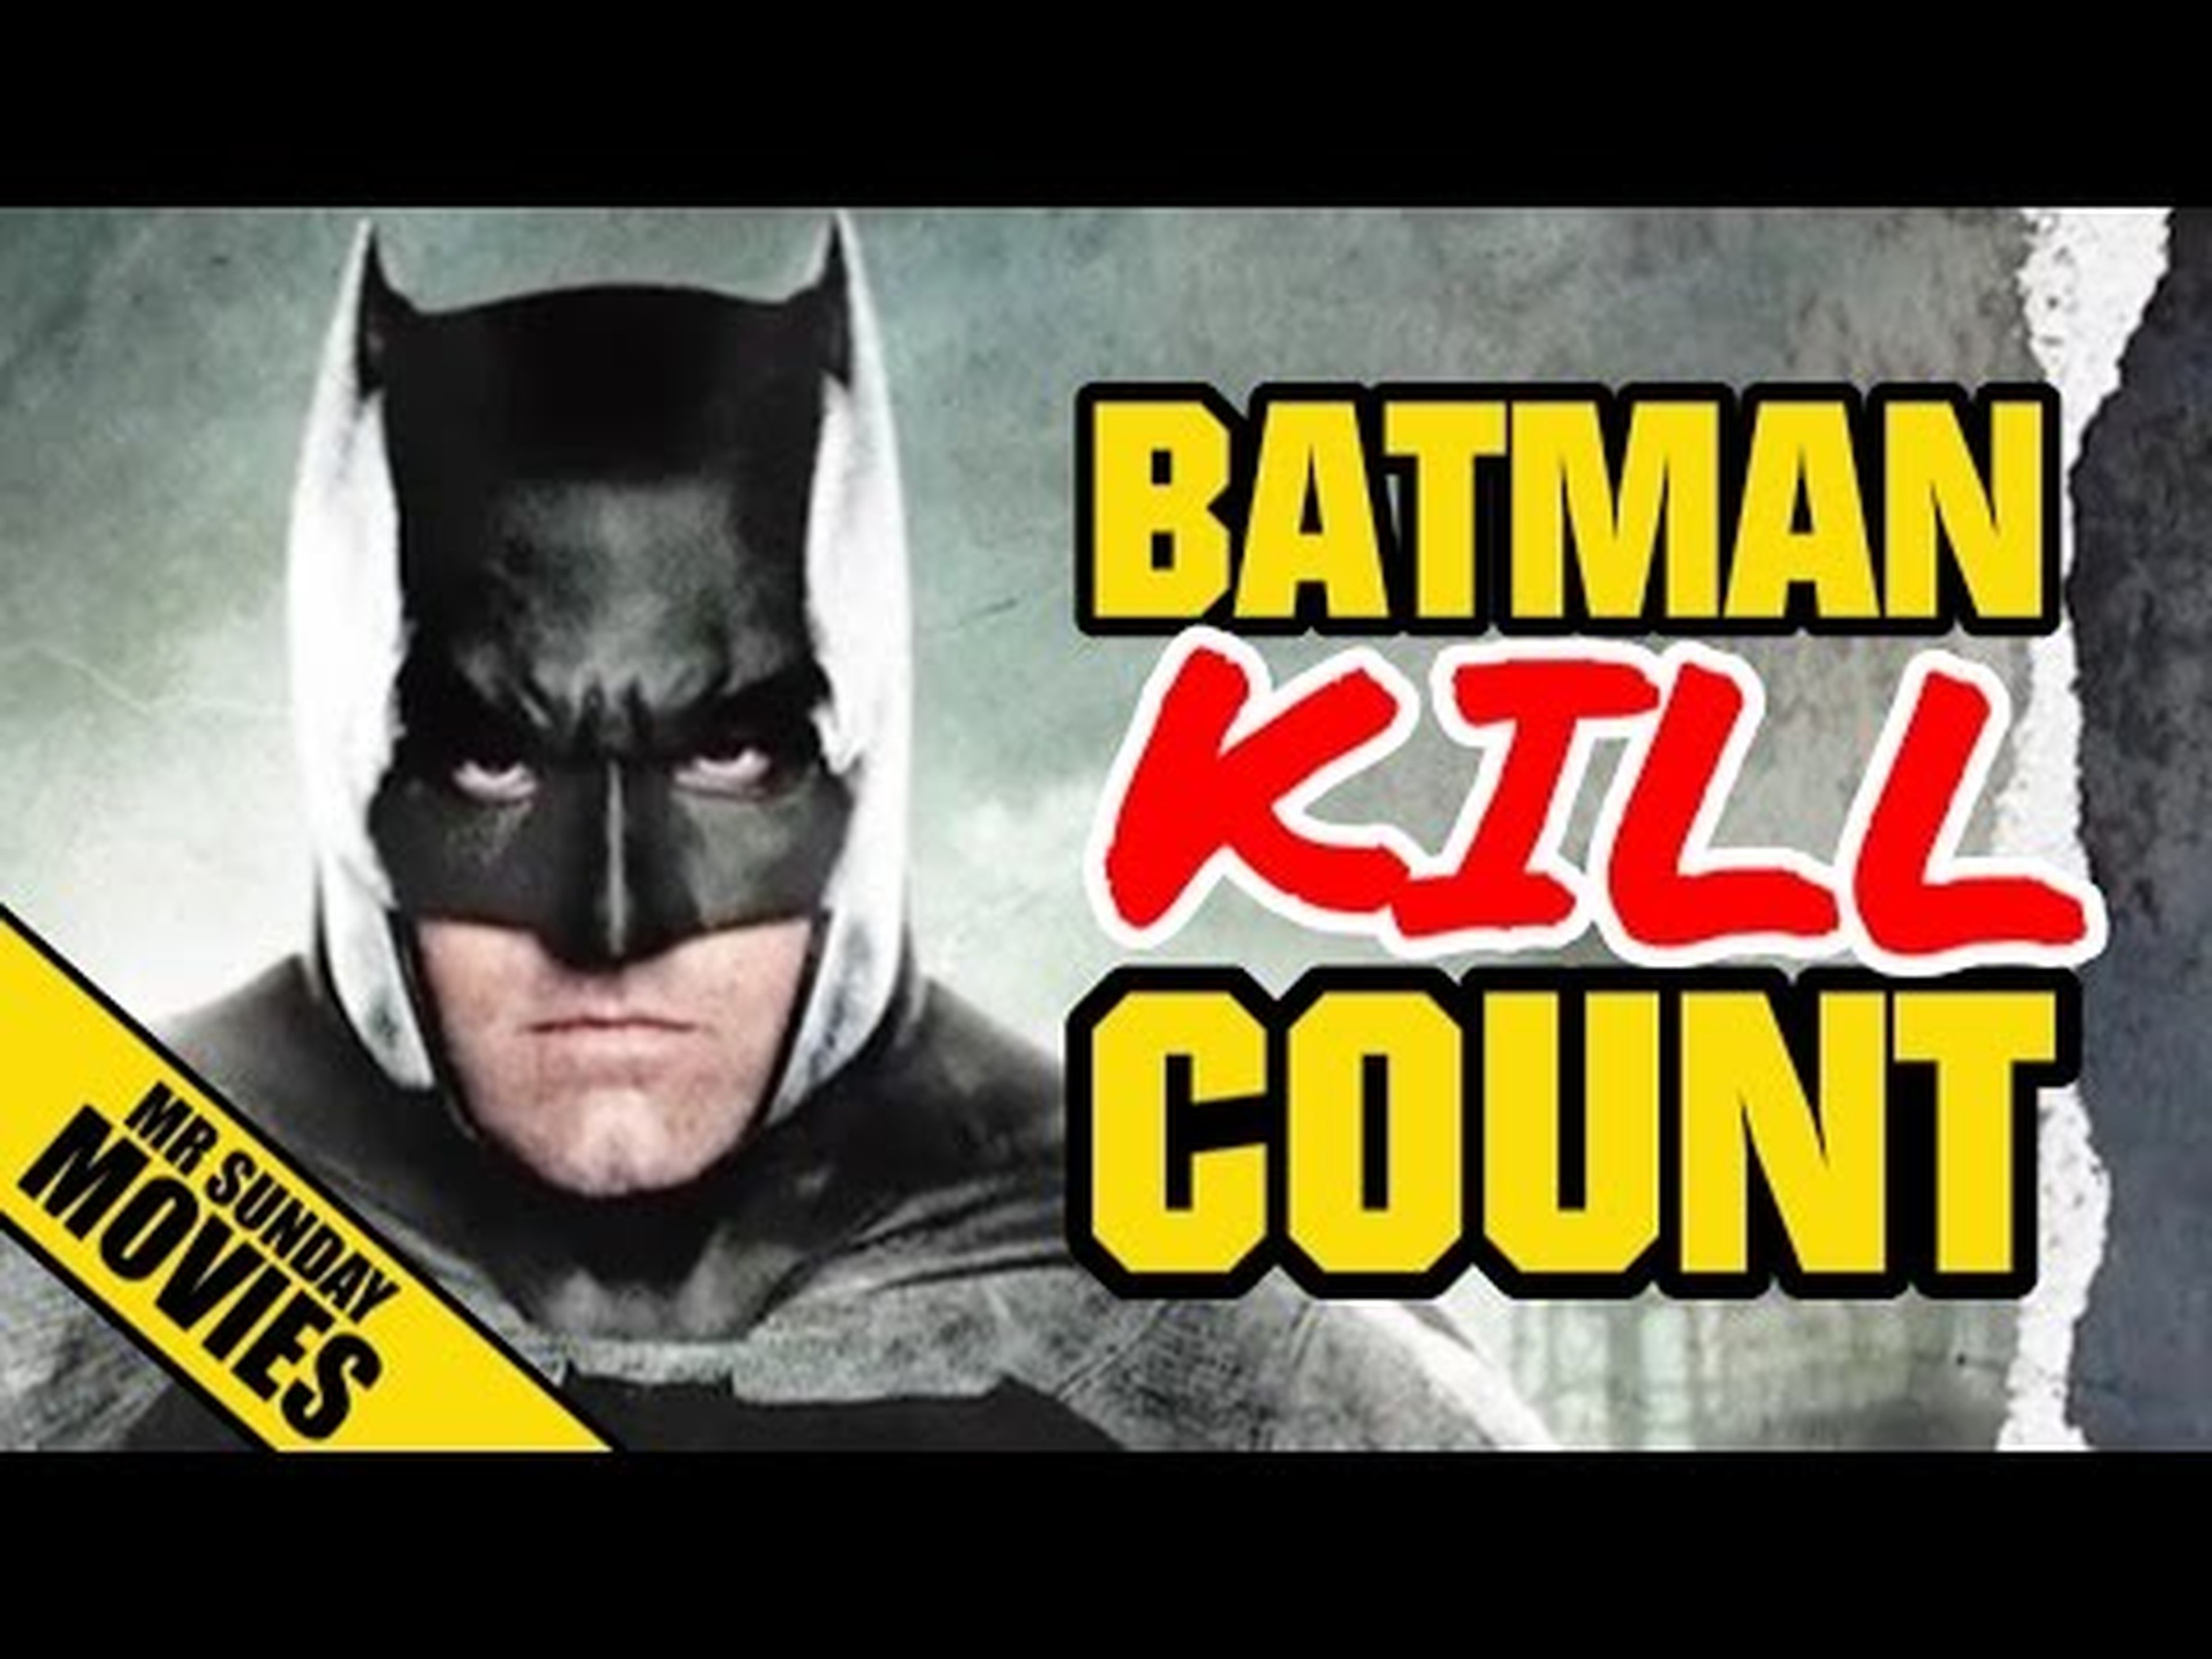 Batman BATMAN V SUPERMAN Movie Kill Count Supercut